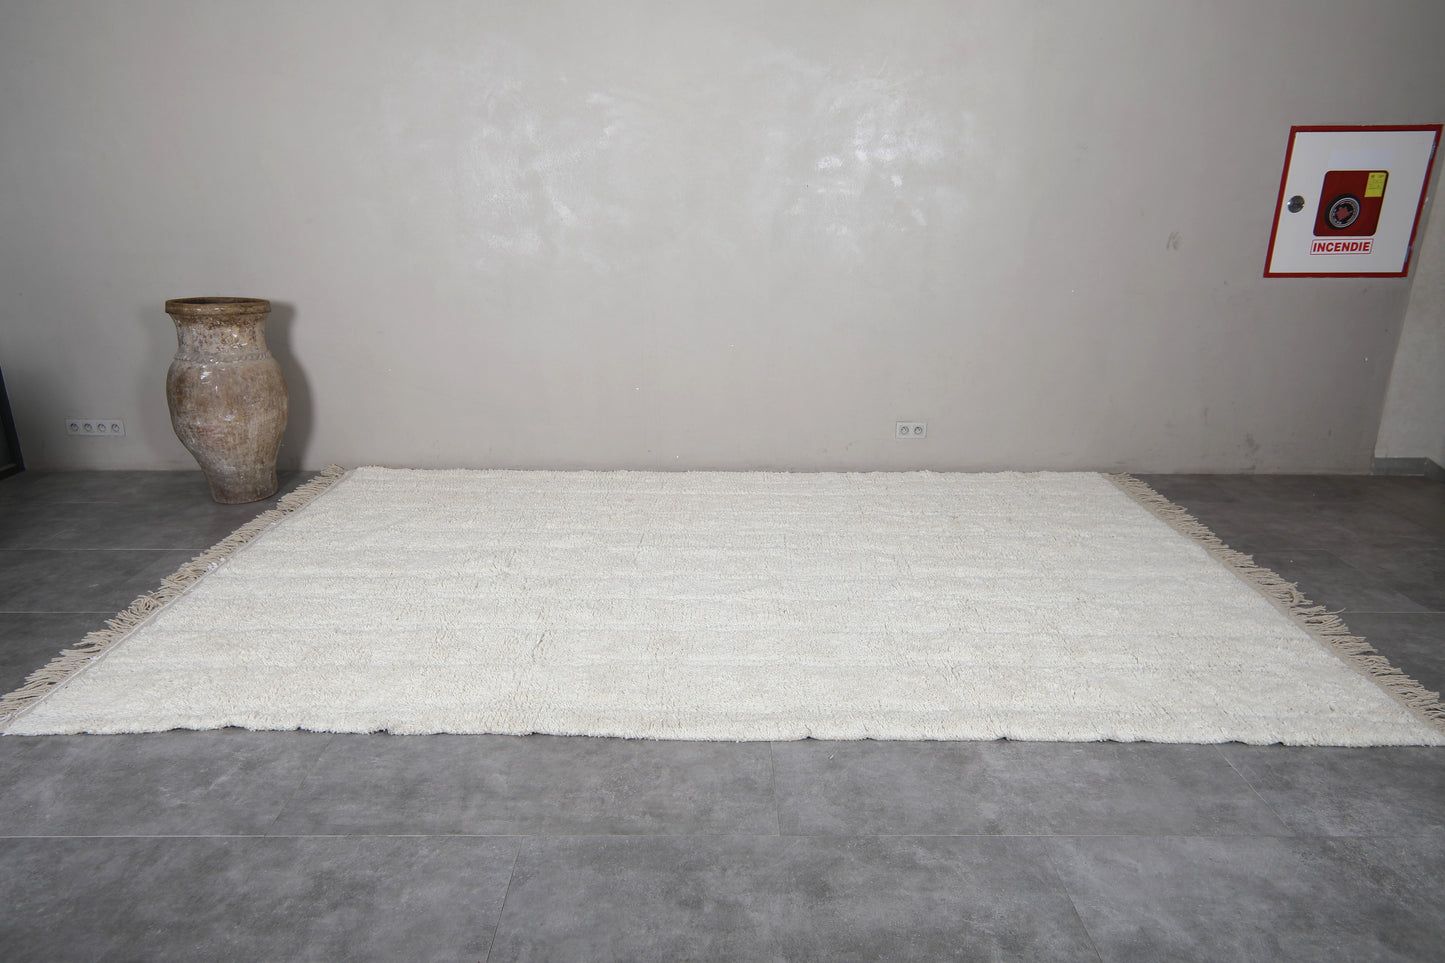 Moroccan rug 8 X 13.2 Feet